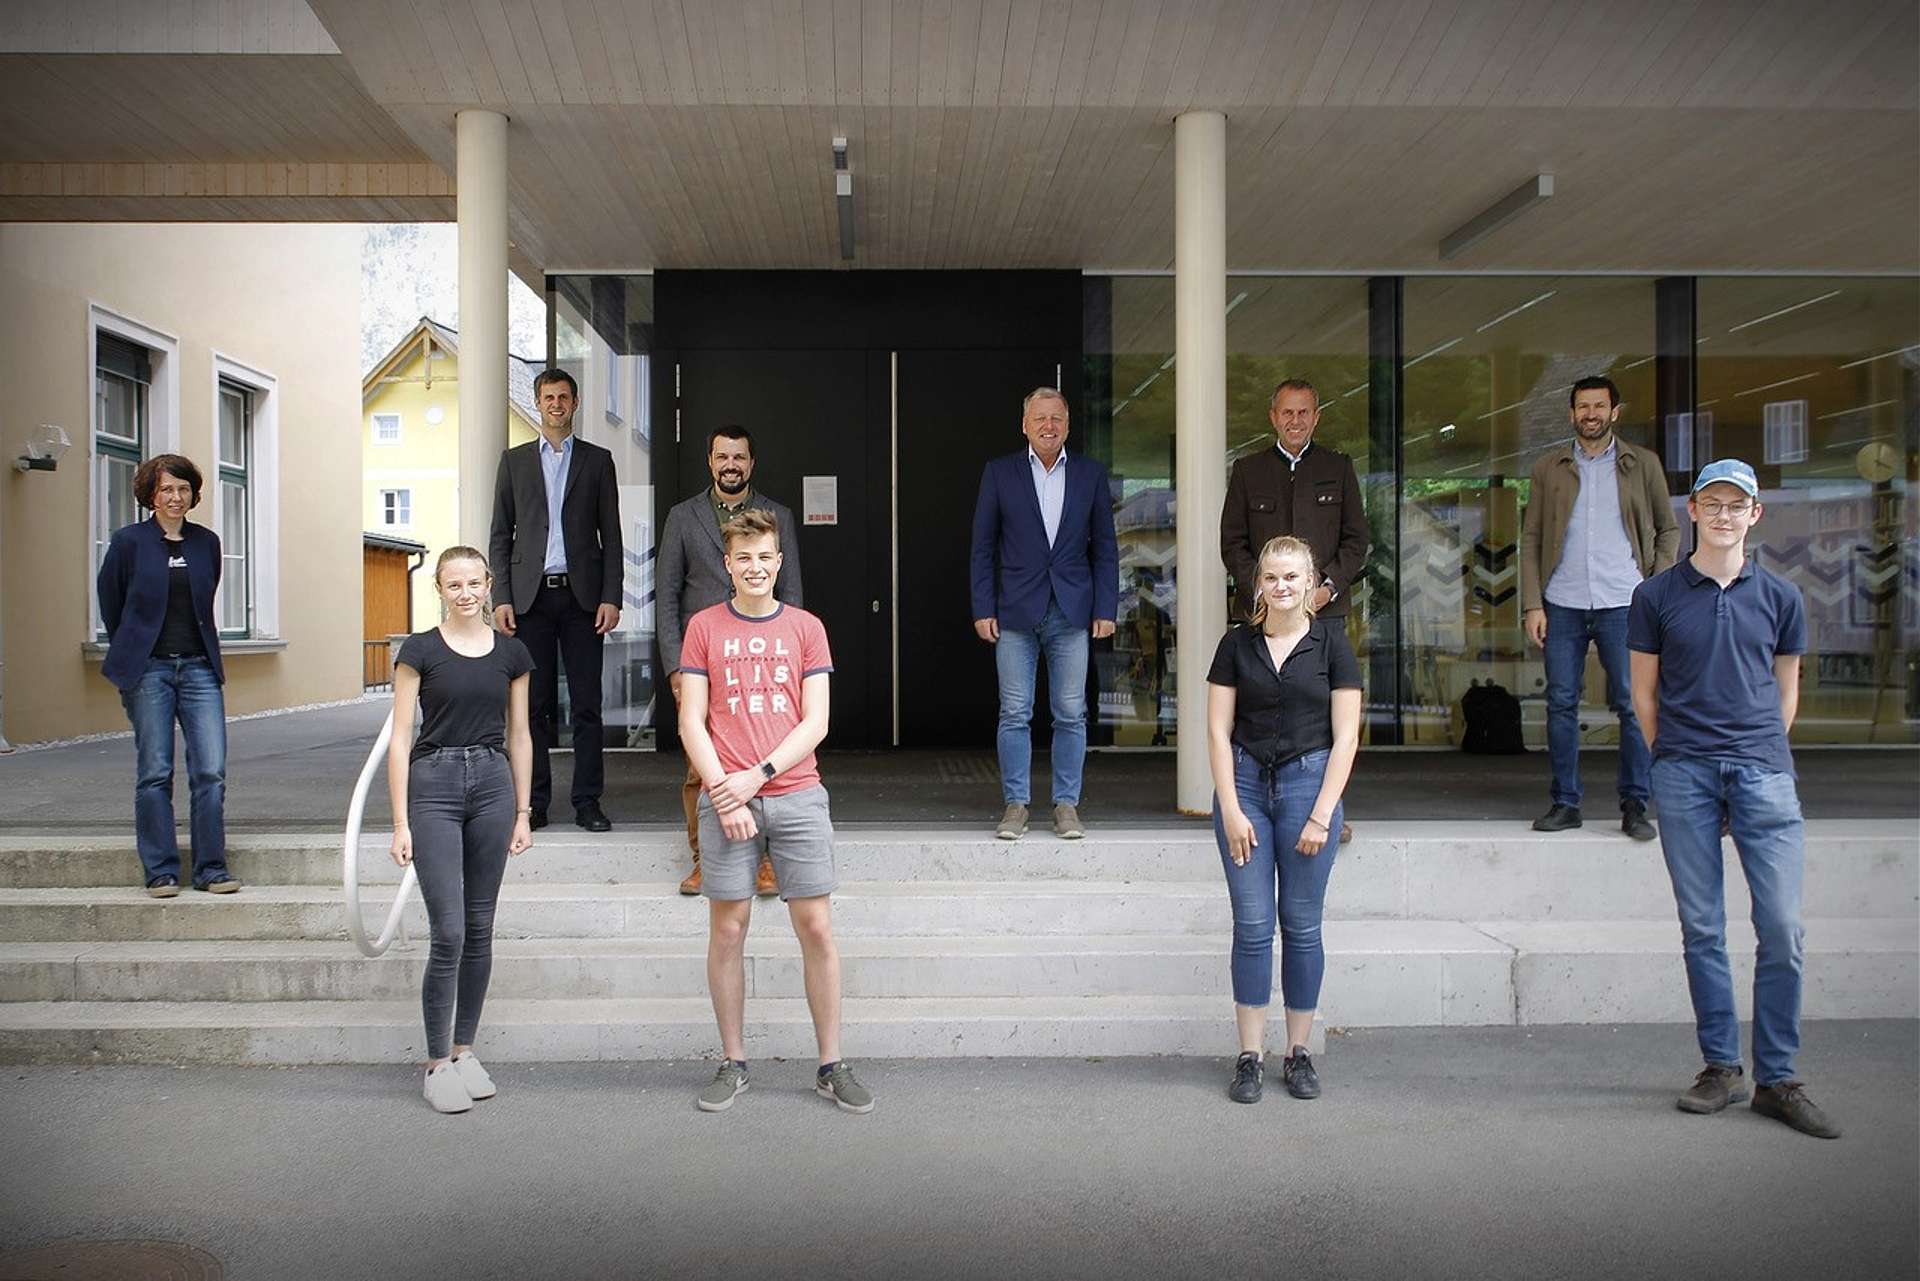 Gruppenfoto des Projektteams von 10 Personen vor der HTBLA Hallstatt